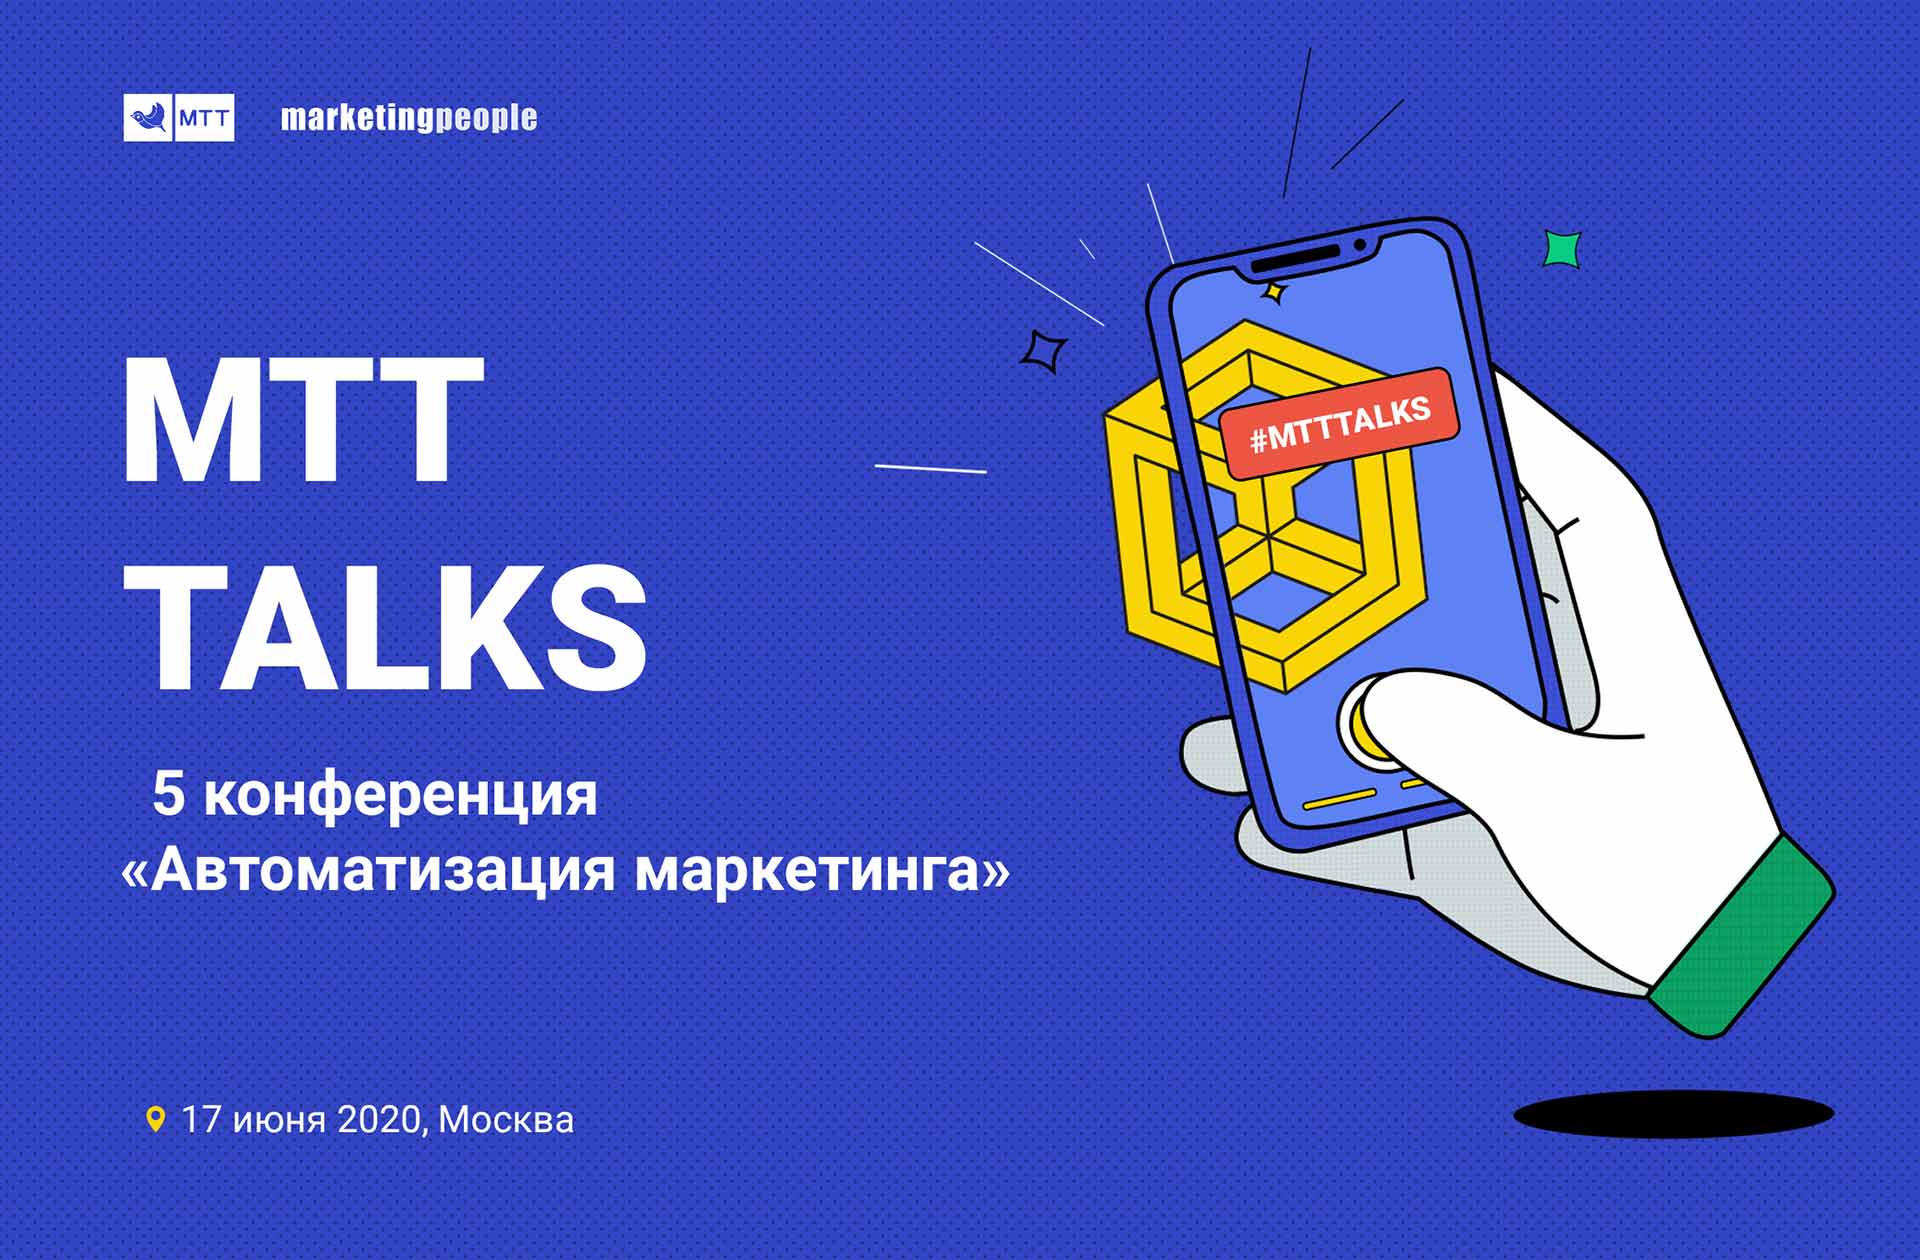 17 июня 2020 года в Москве состоится пятая конференция «Автоматизация маркетинга» MTT Talks